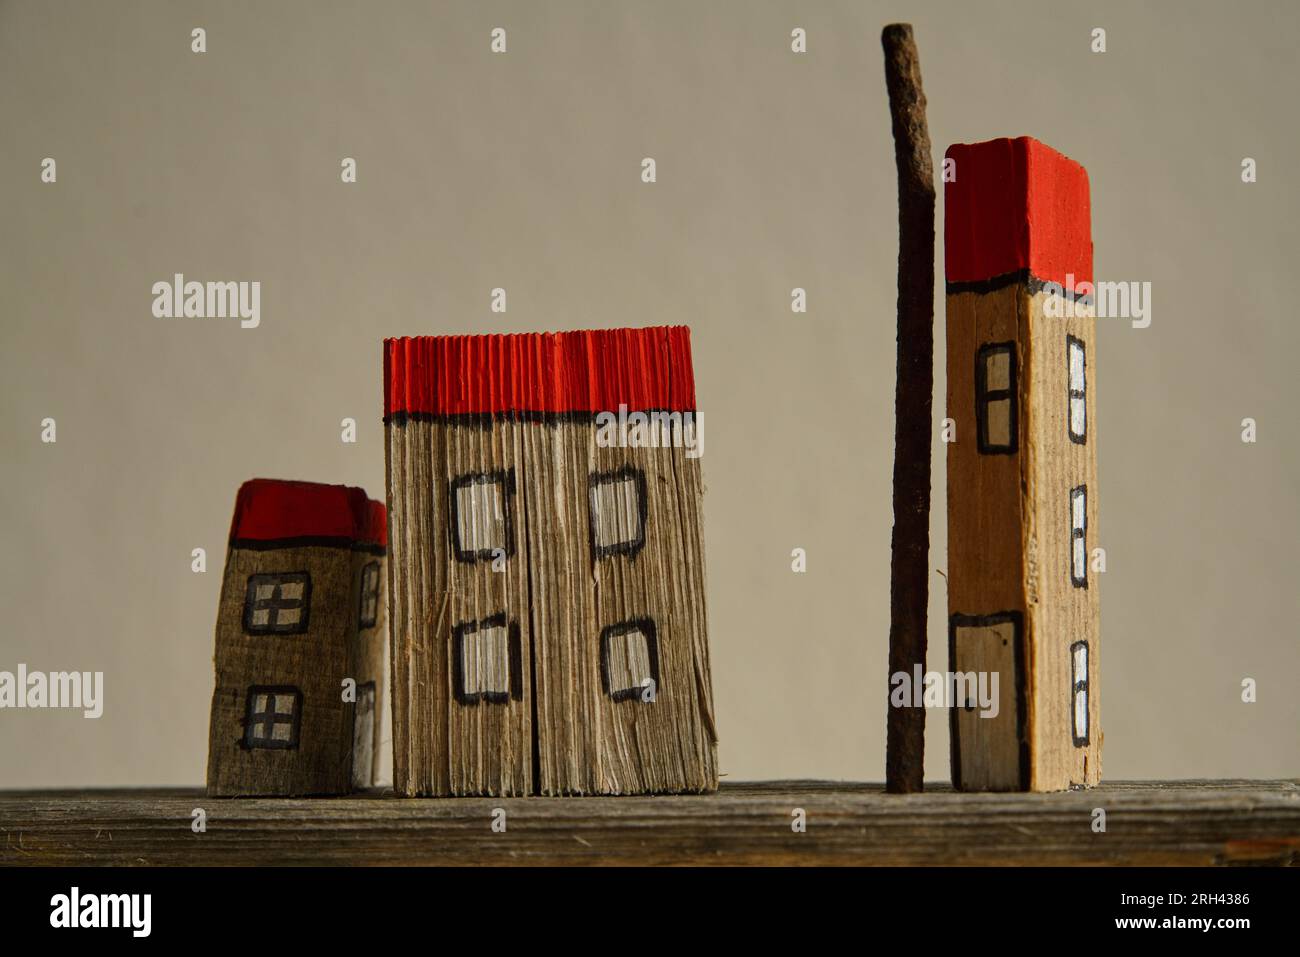 Haussiedlung mit Holzmodellen Stock Photo